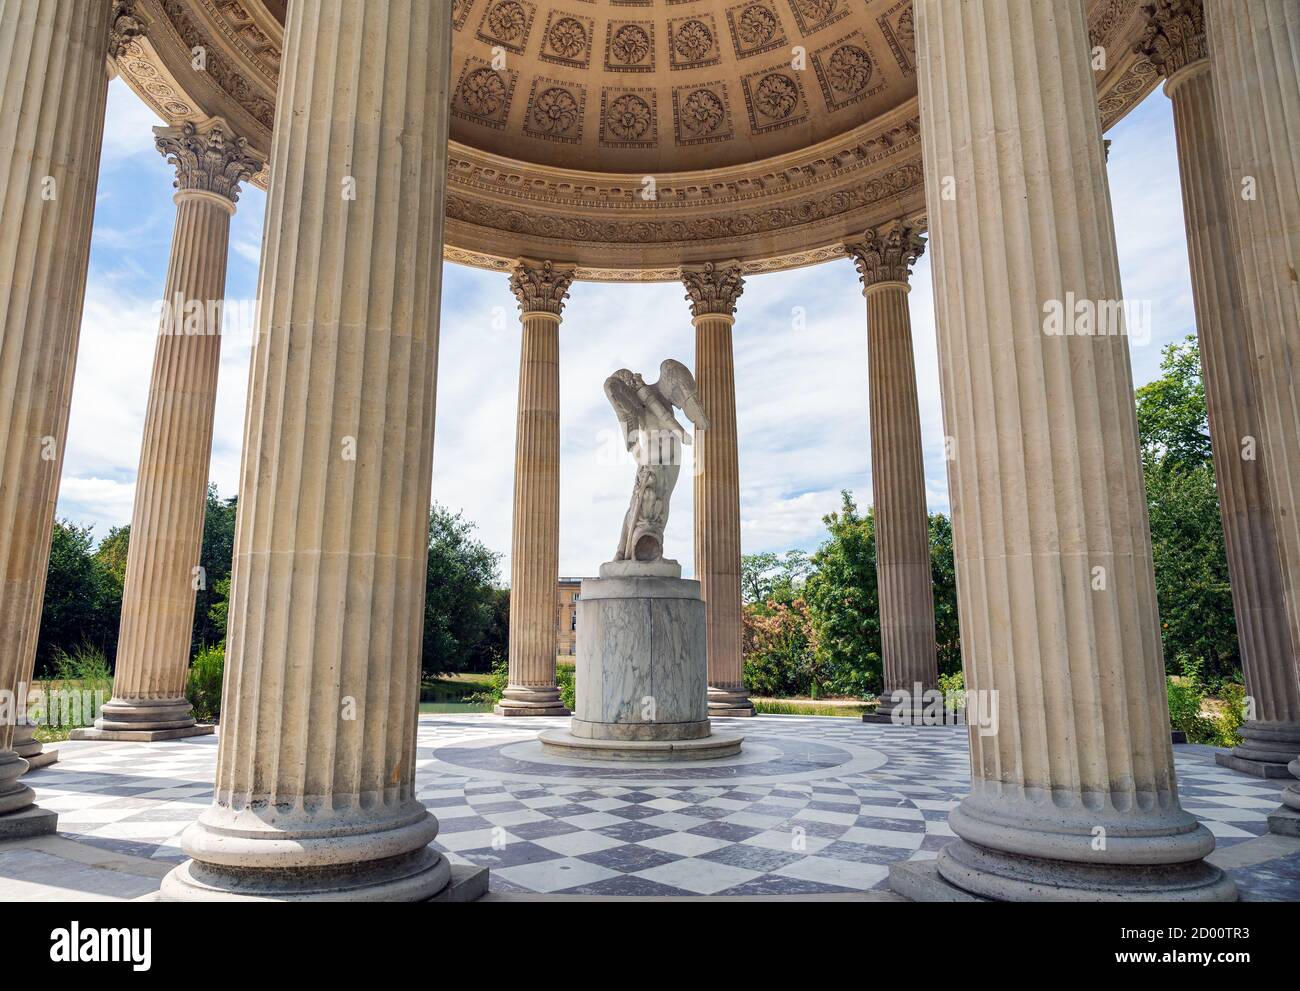 Tempio dell'amore nel giardino del Grand Trianon - Versailles, Francia Foto Stock